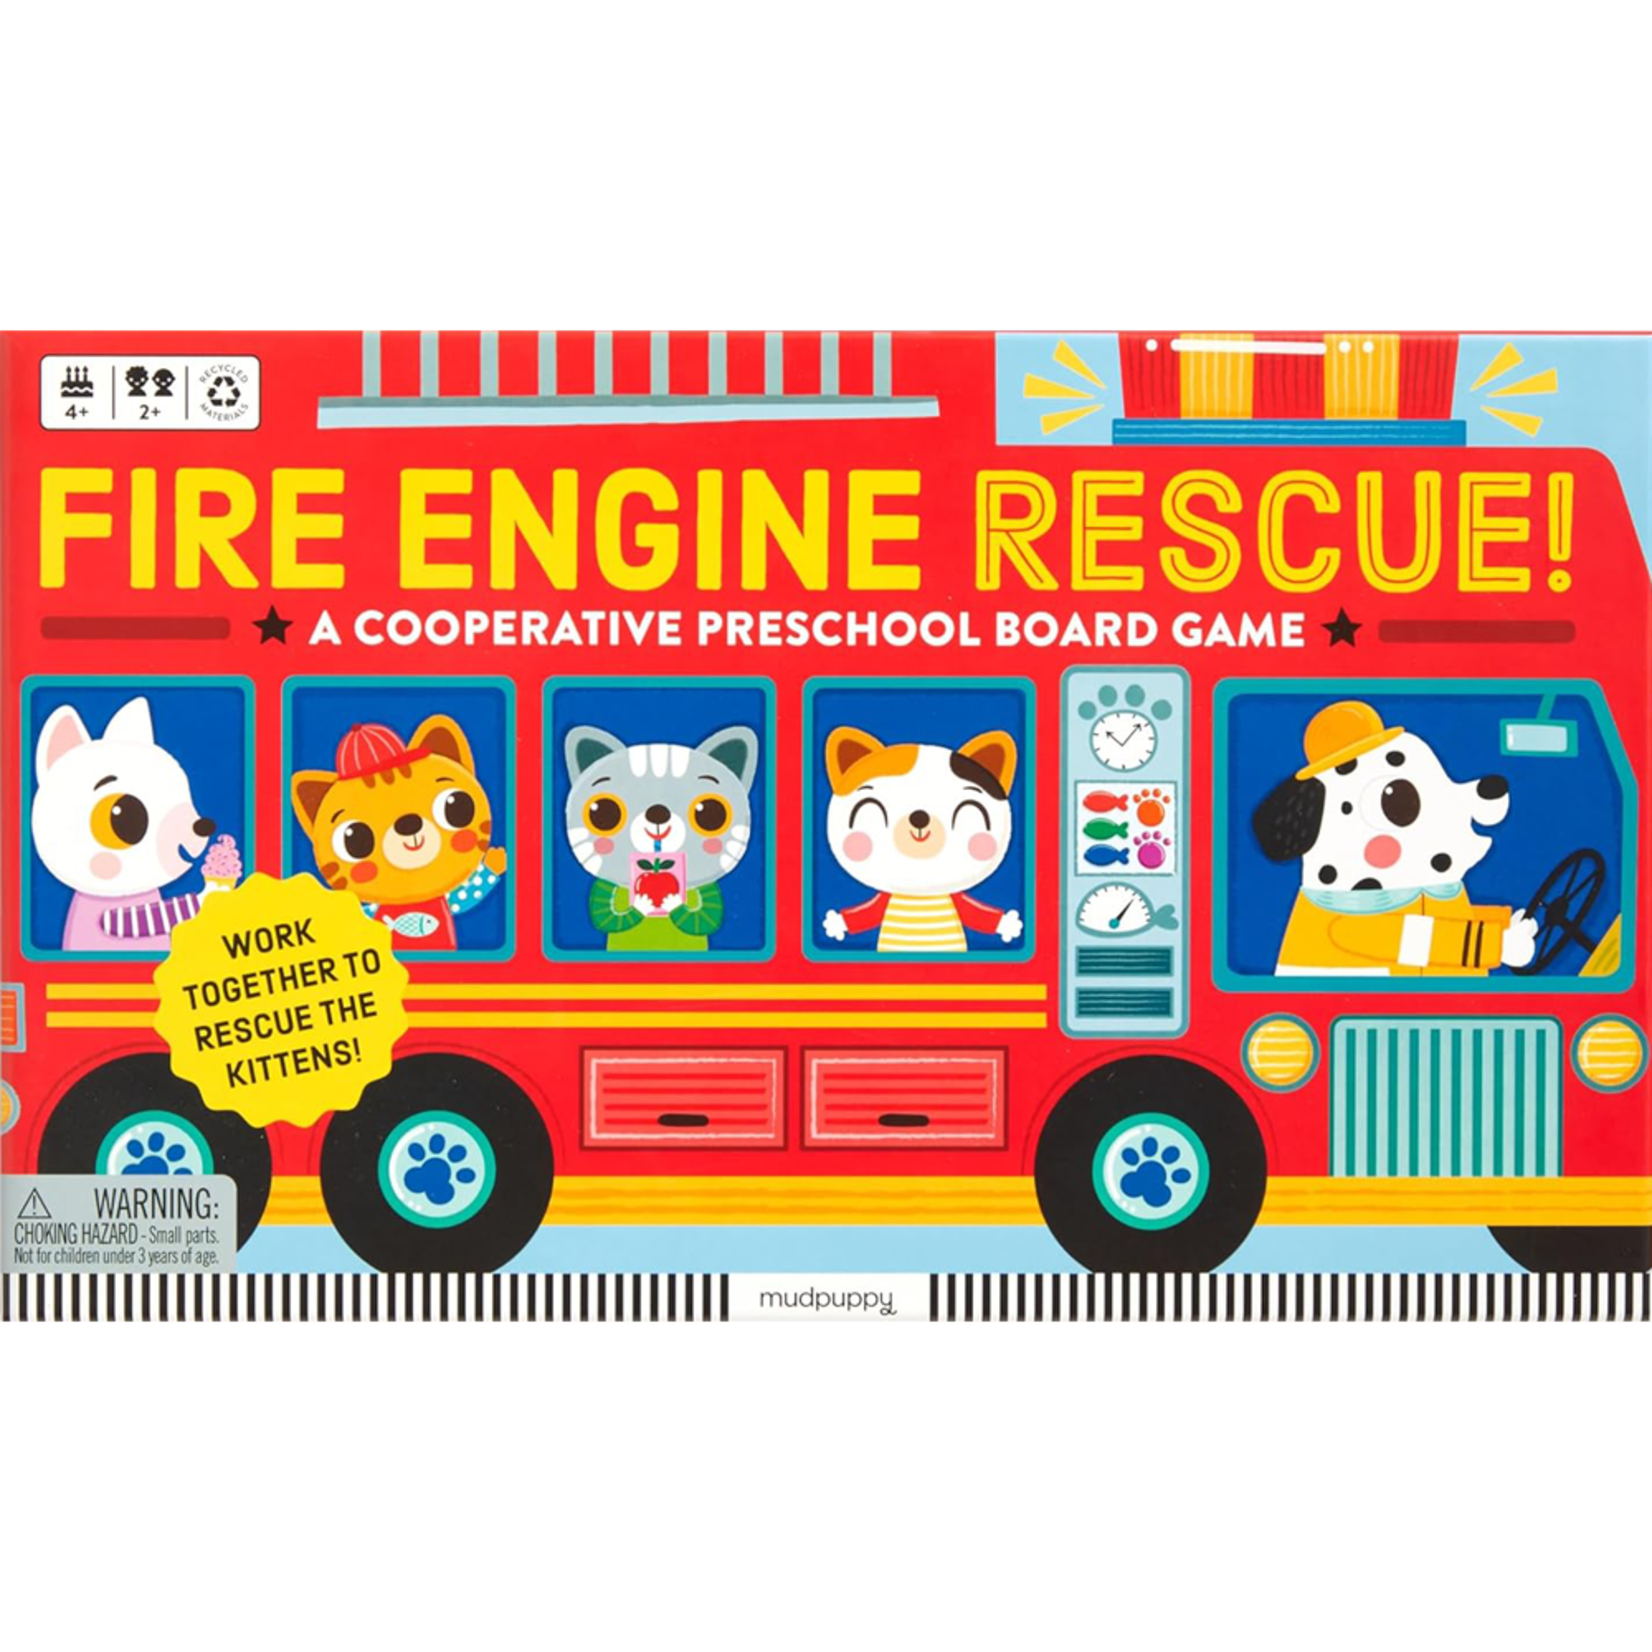 Mudpuppy Fire Engine Rescue!